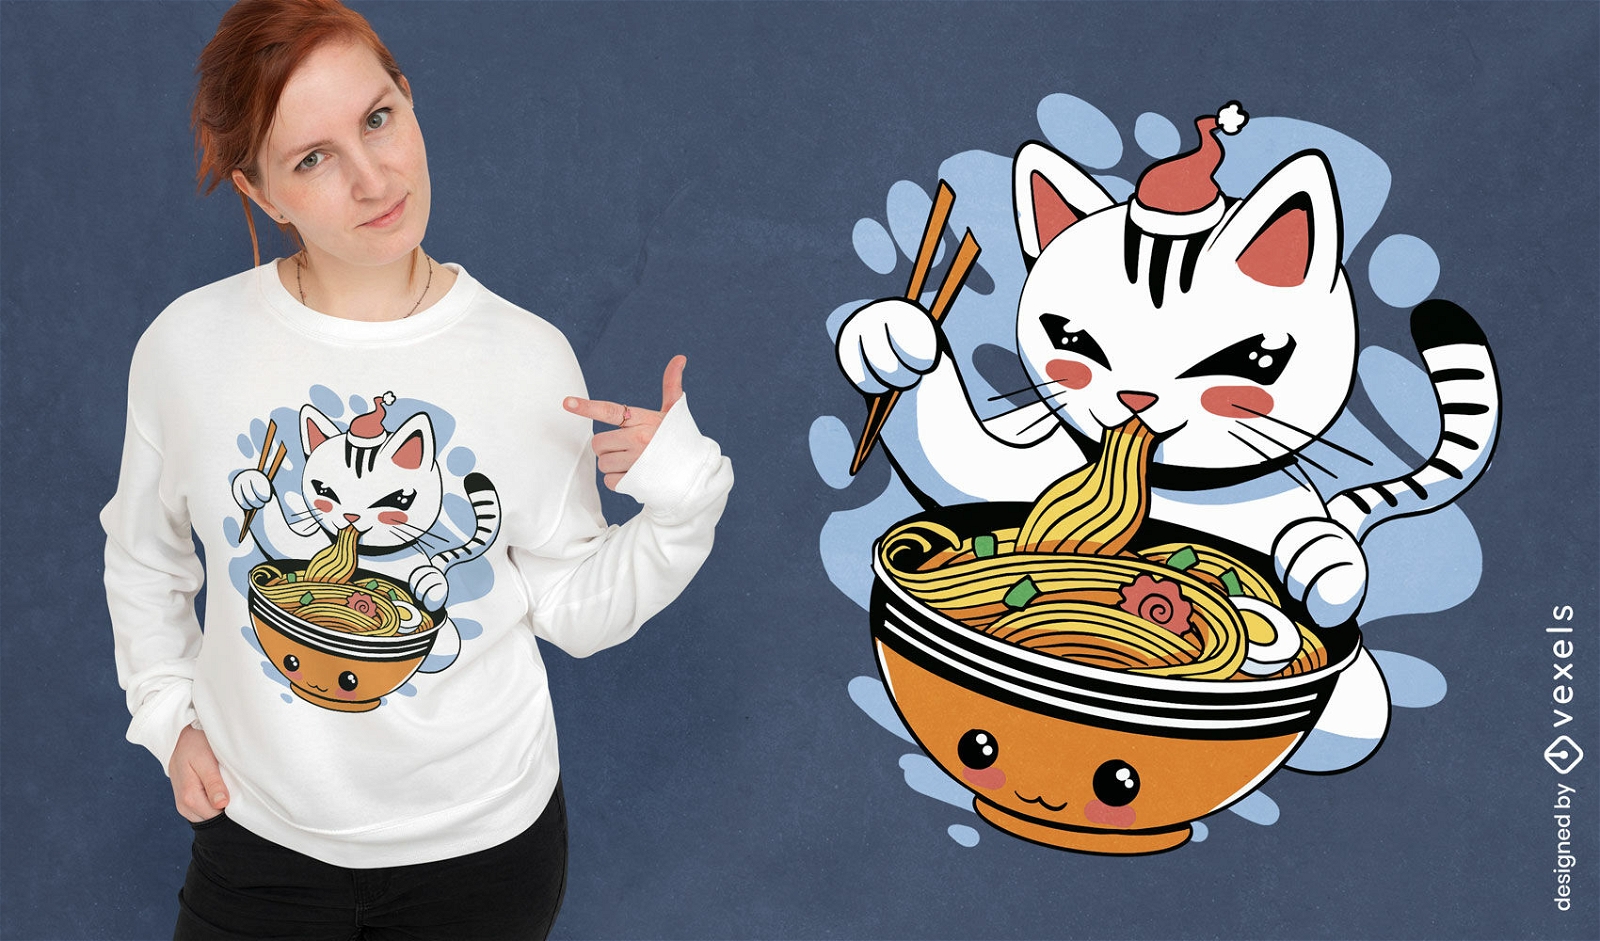 Dise?o de camiseta de gato con un plato de ramen.